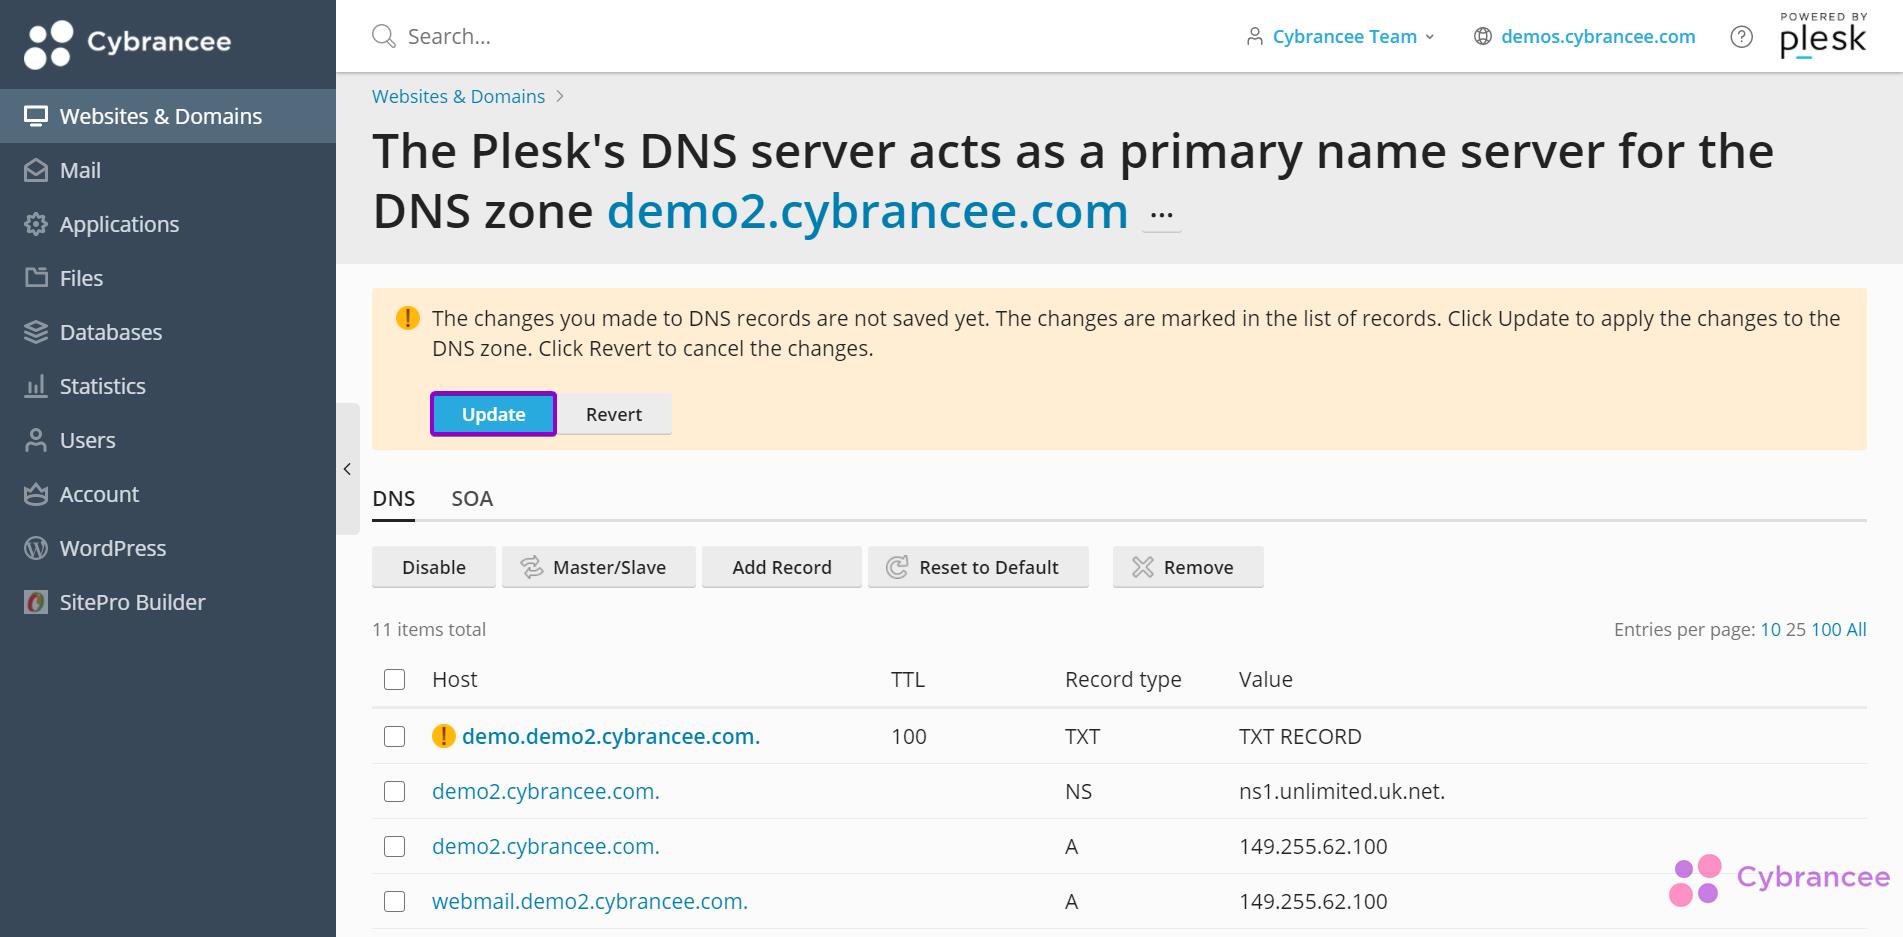 https://cybrancee.com/img/knowledgebase/Plesk-DNS-Settings.jpg